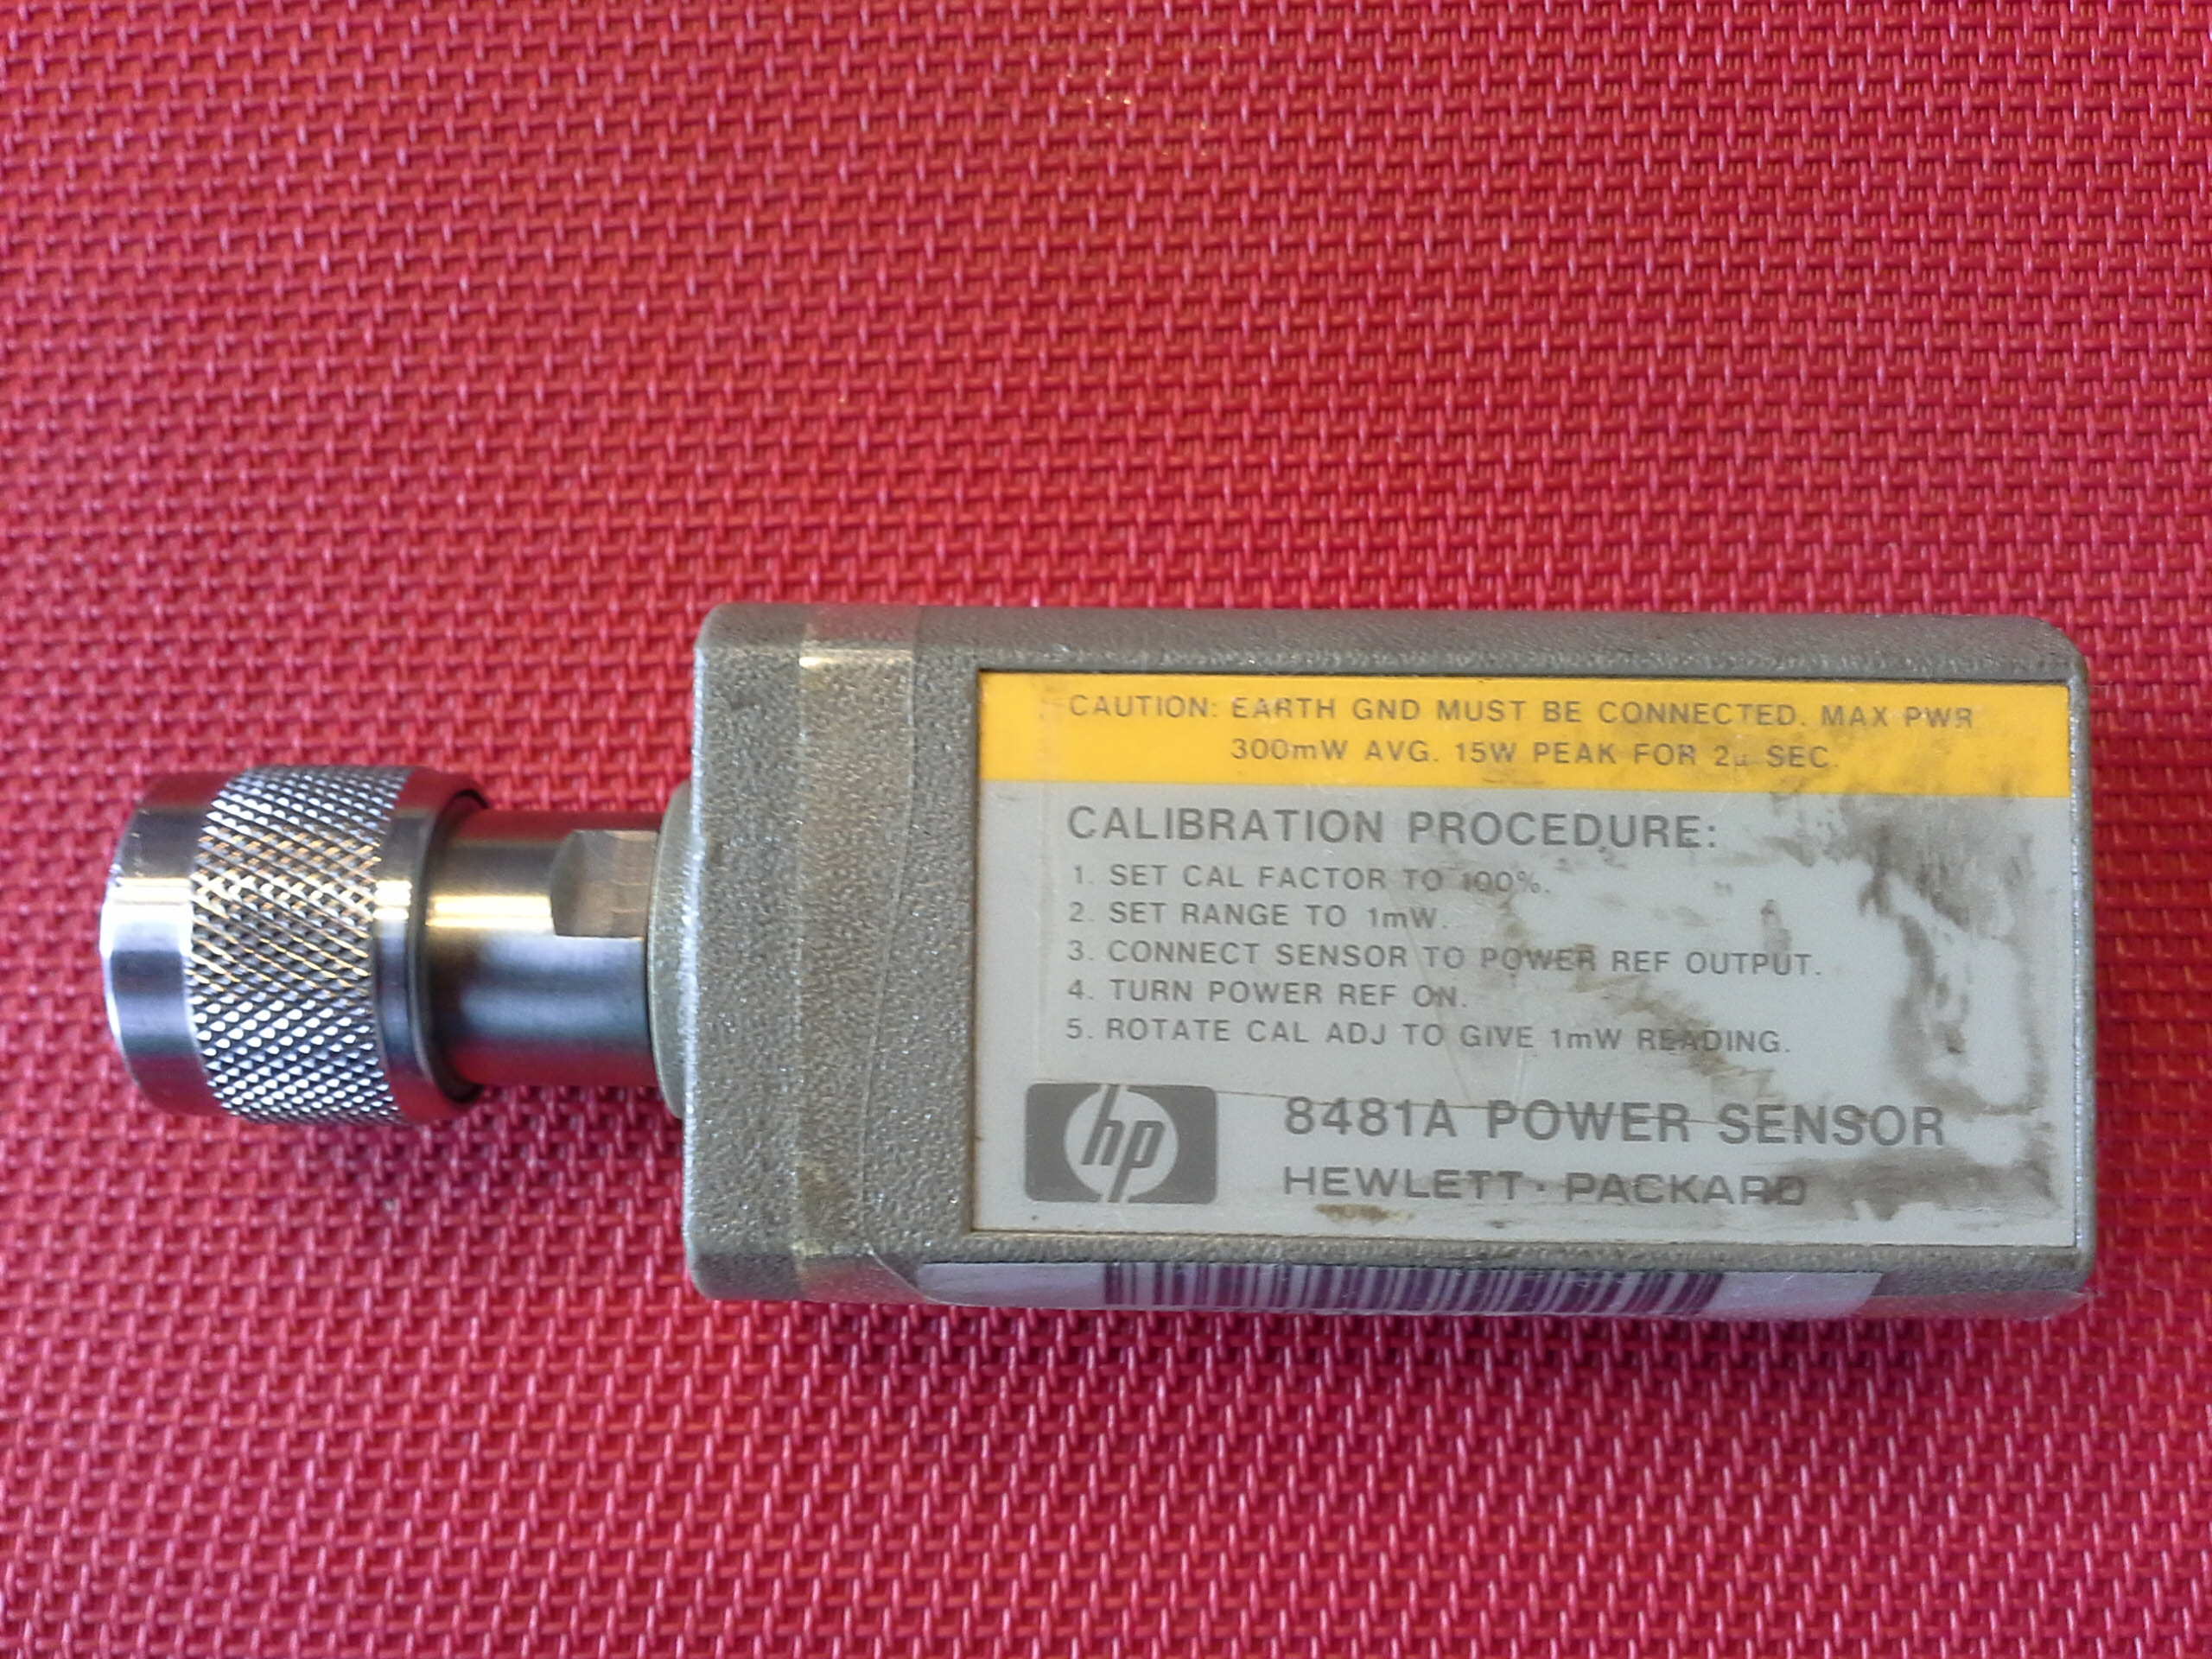 Hewlett Packard 8481A - Power Sensor